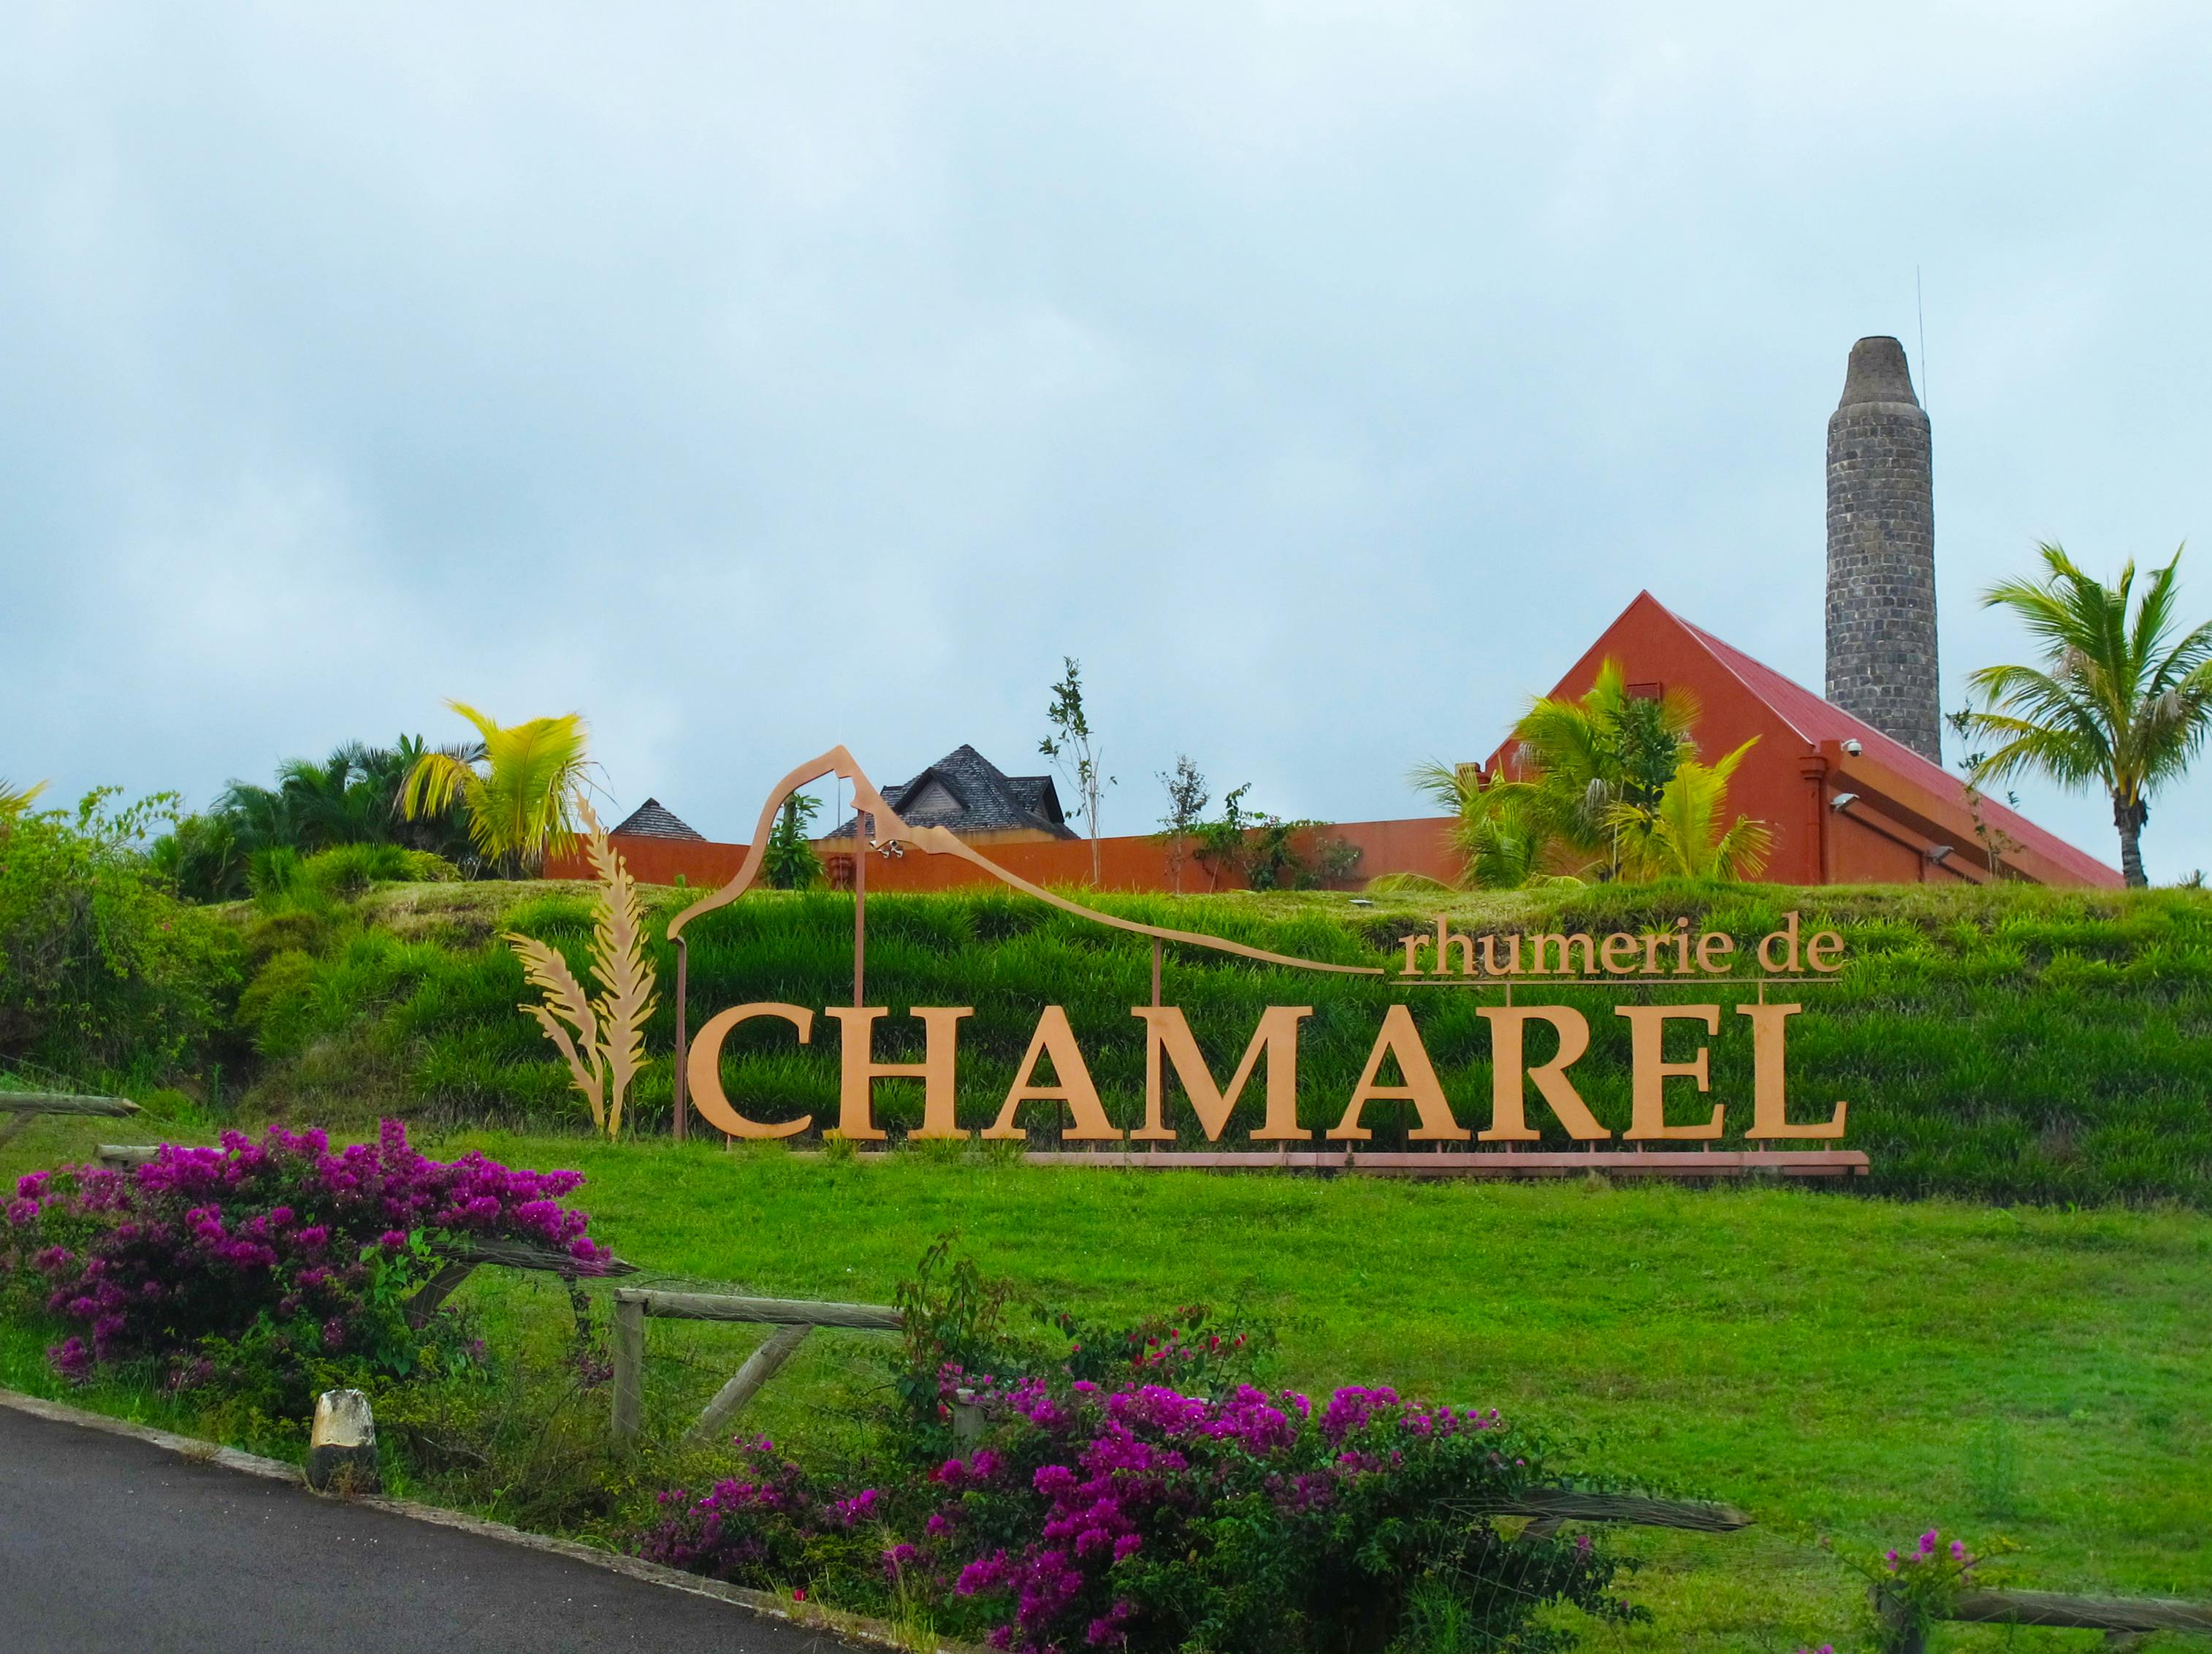 Rhumerie de Chamarel entrance ticket